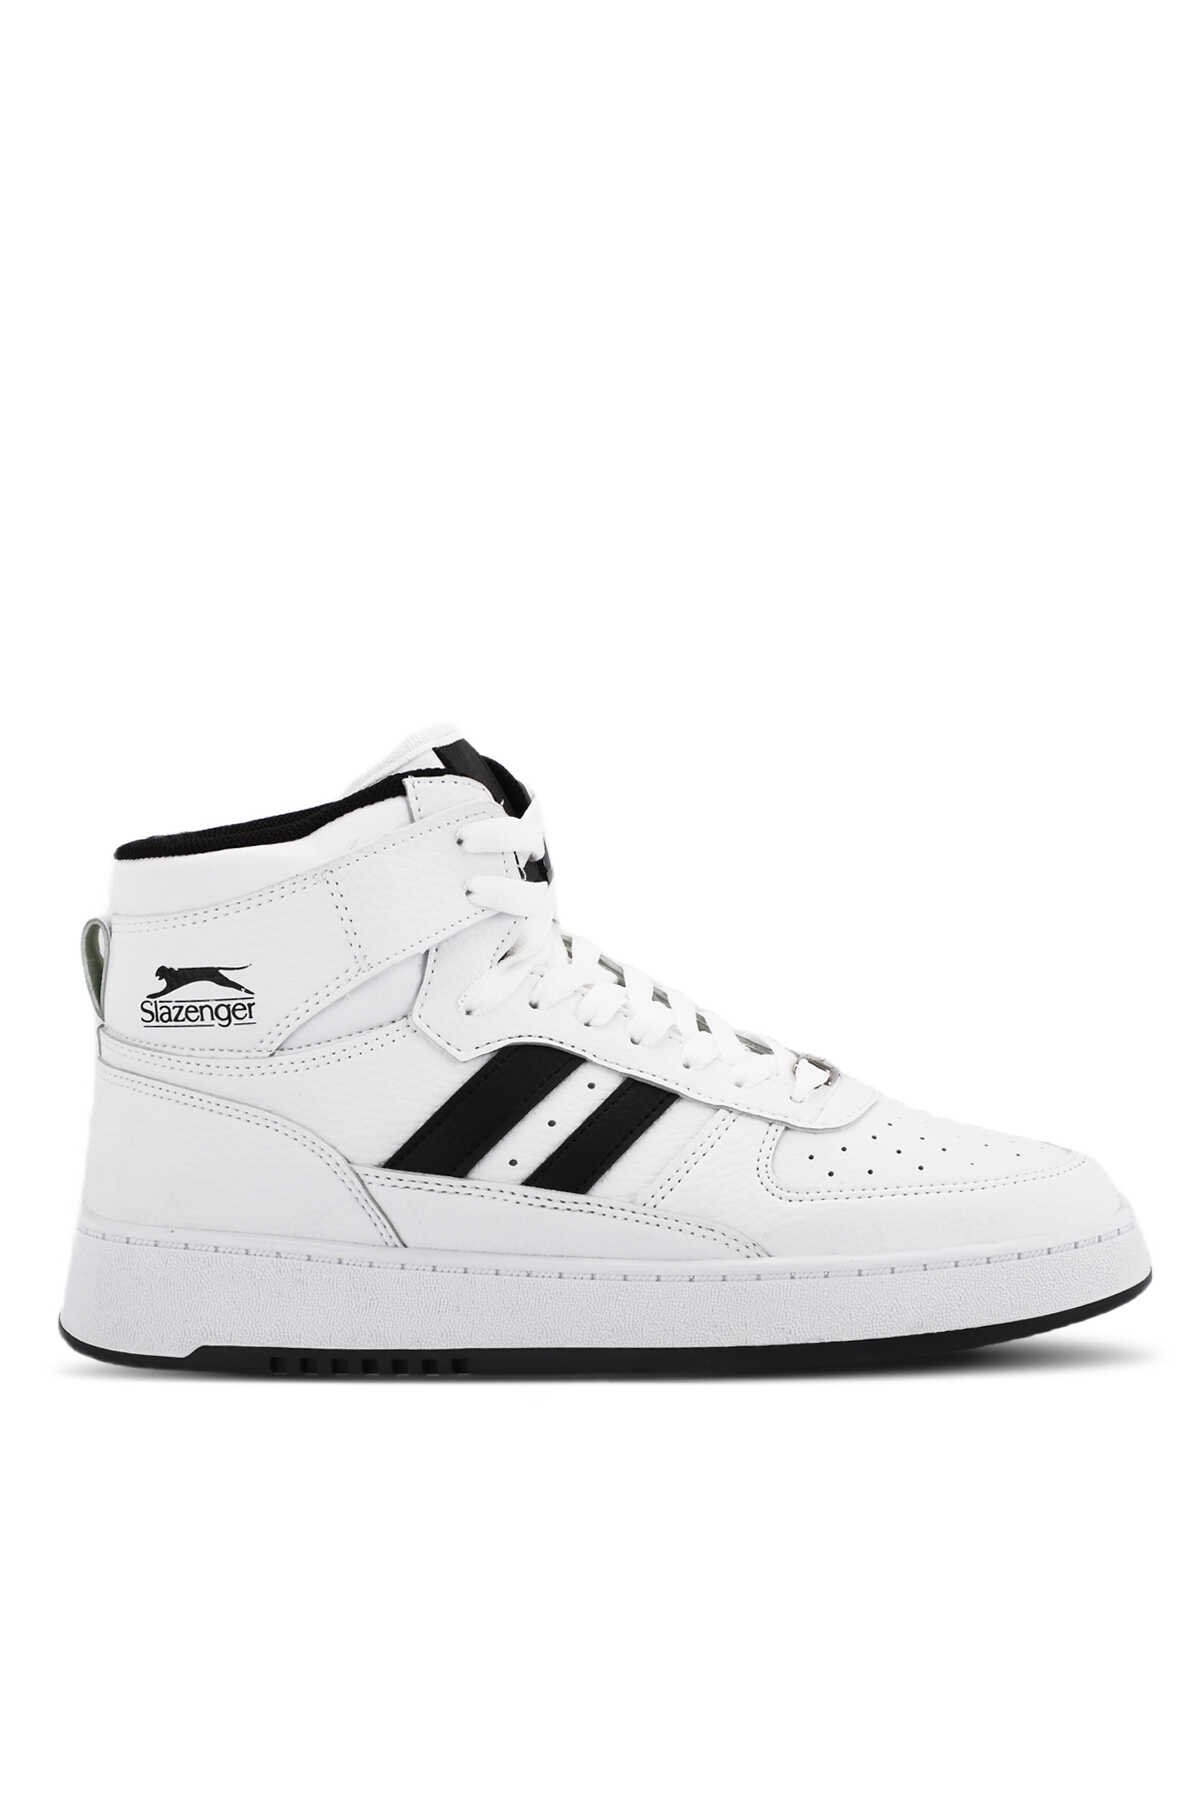 Slazenger - Slazenger DAPHNE HIGH Sneaker Erkek Ayakkabı Beyaz / Siyah